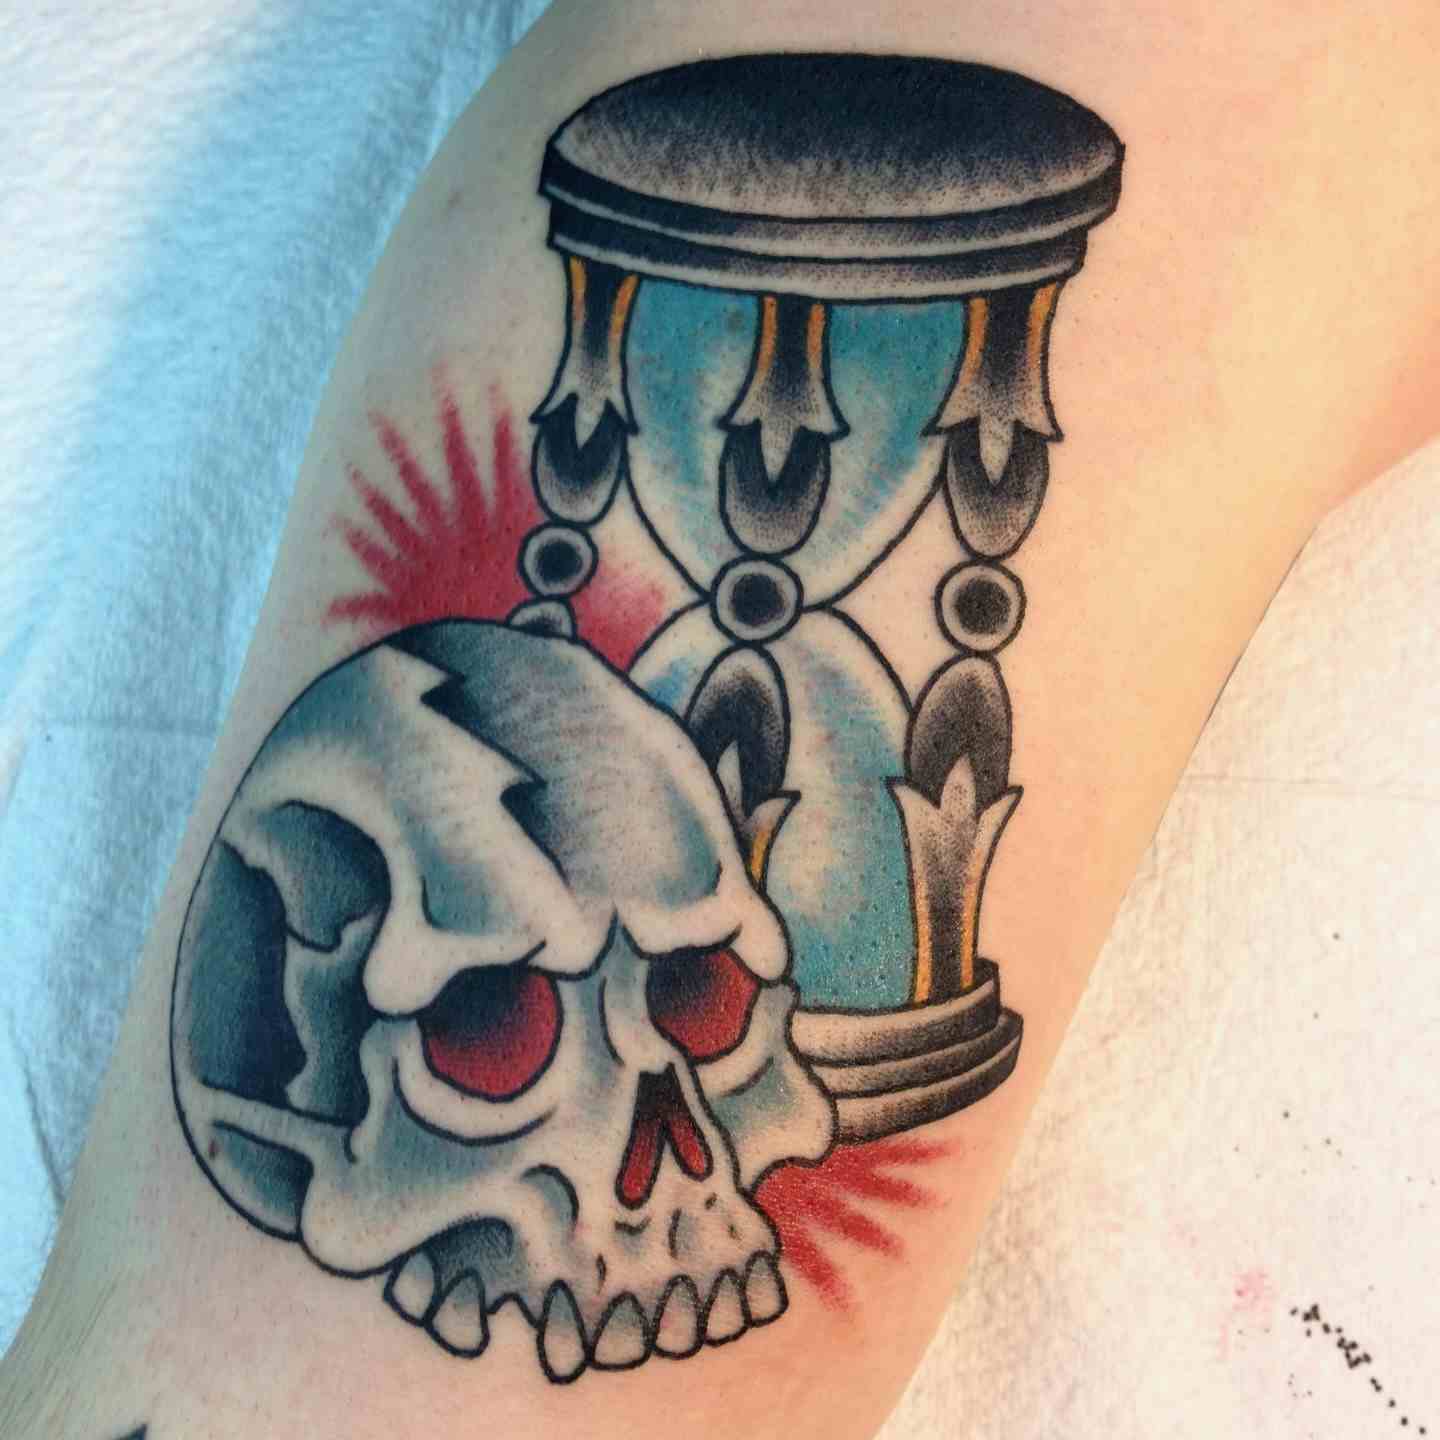 Skull hourglass tattoo